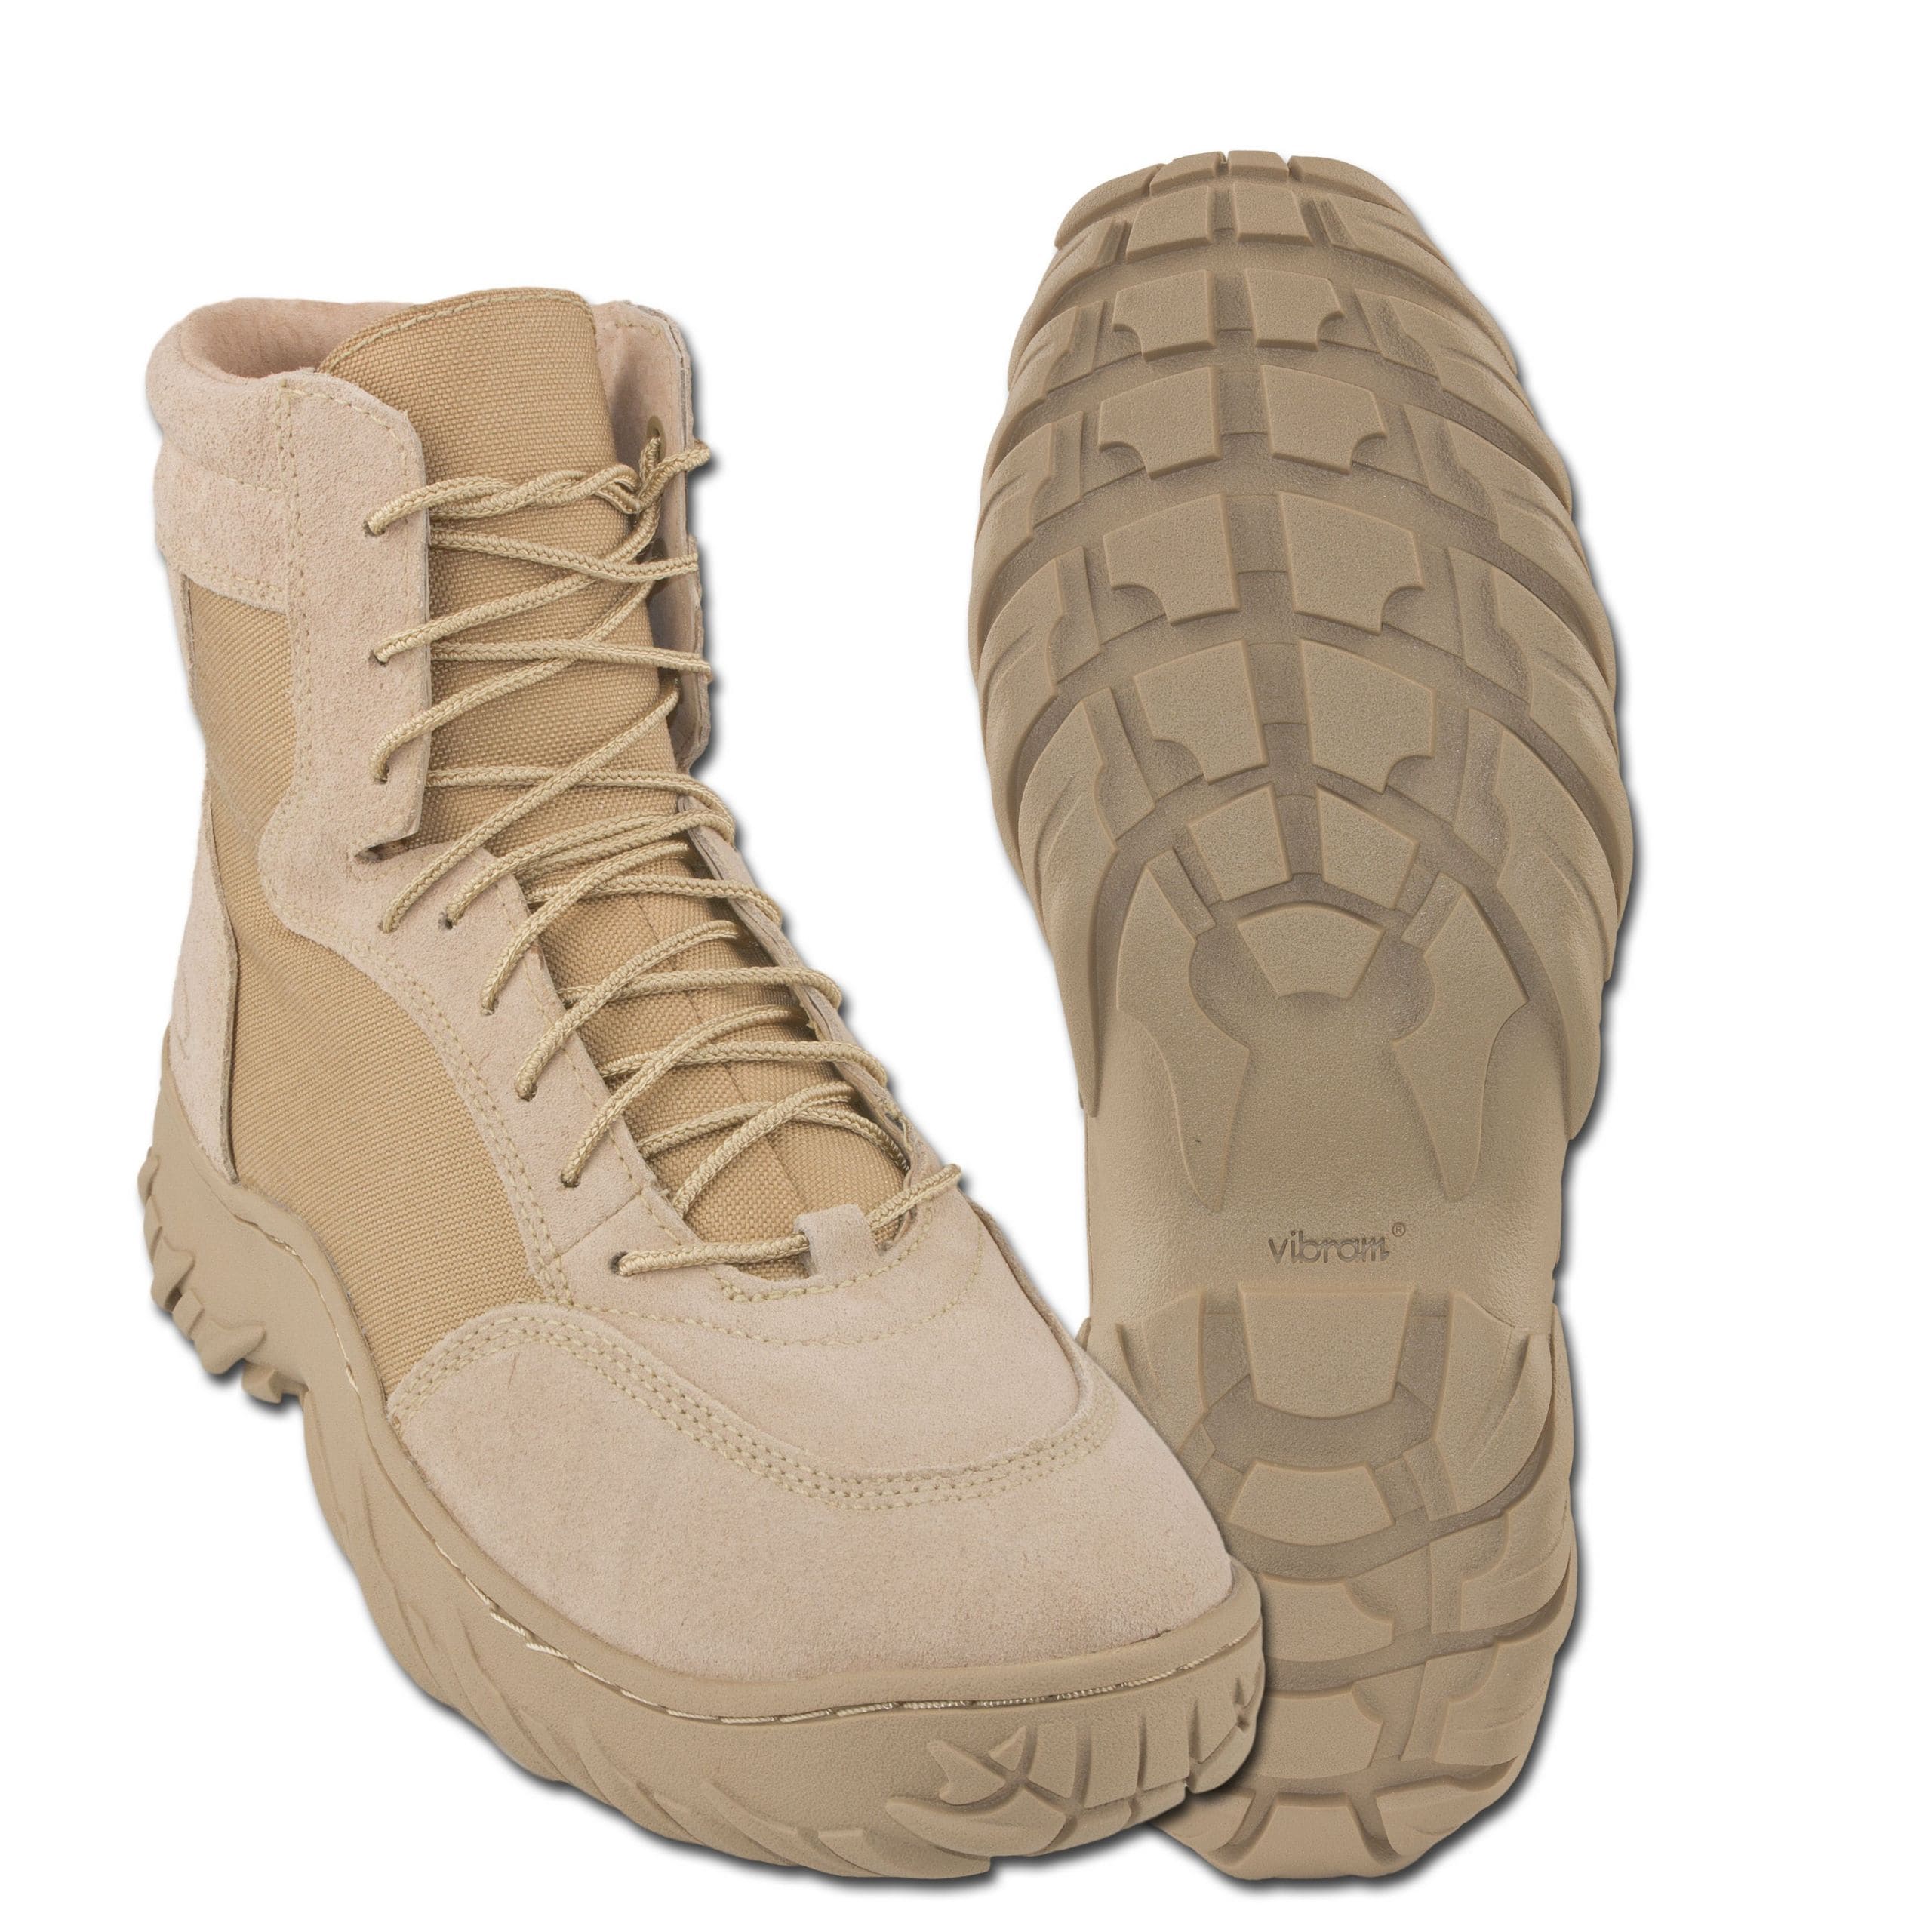 oakley vibram boots